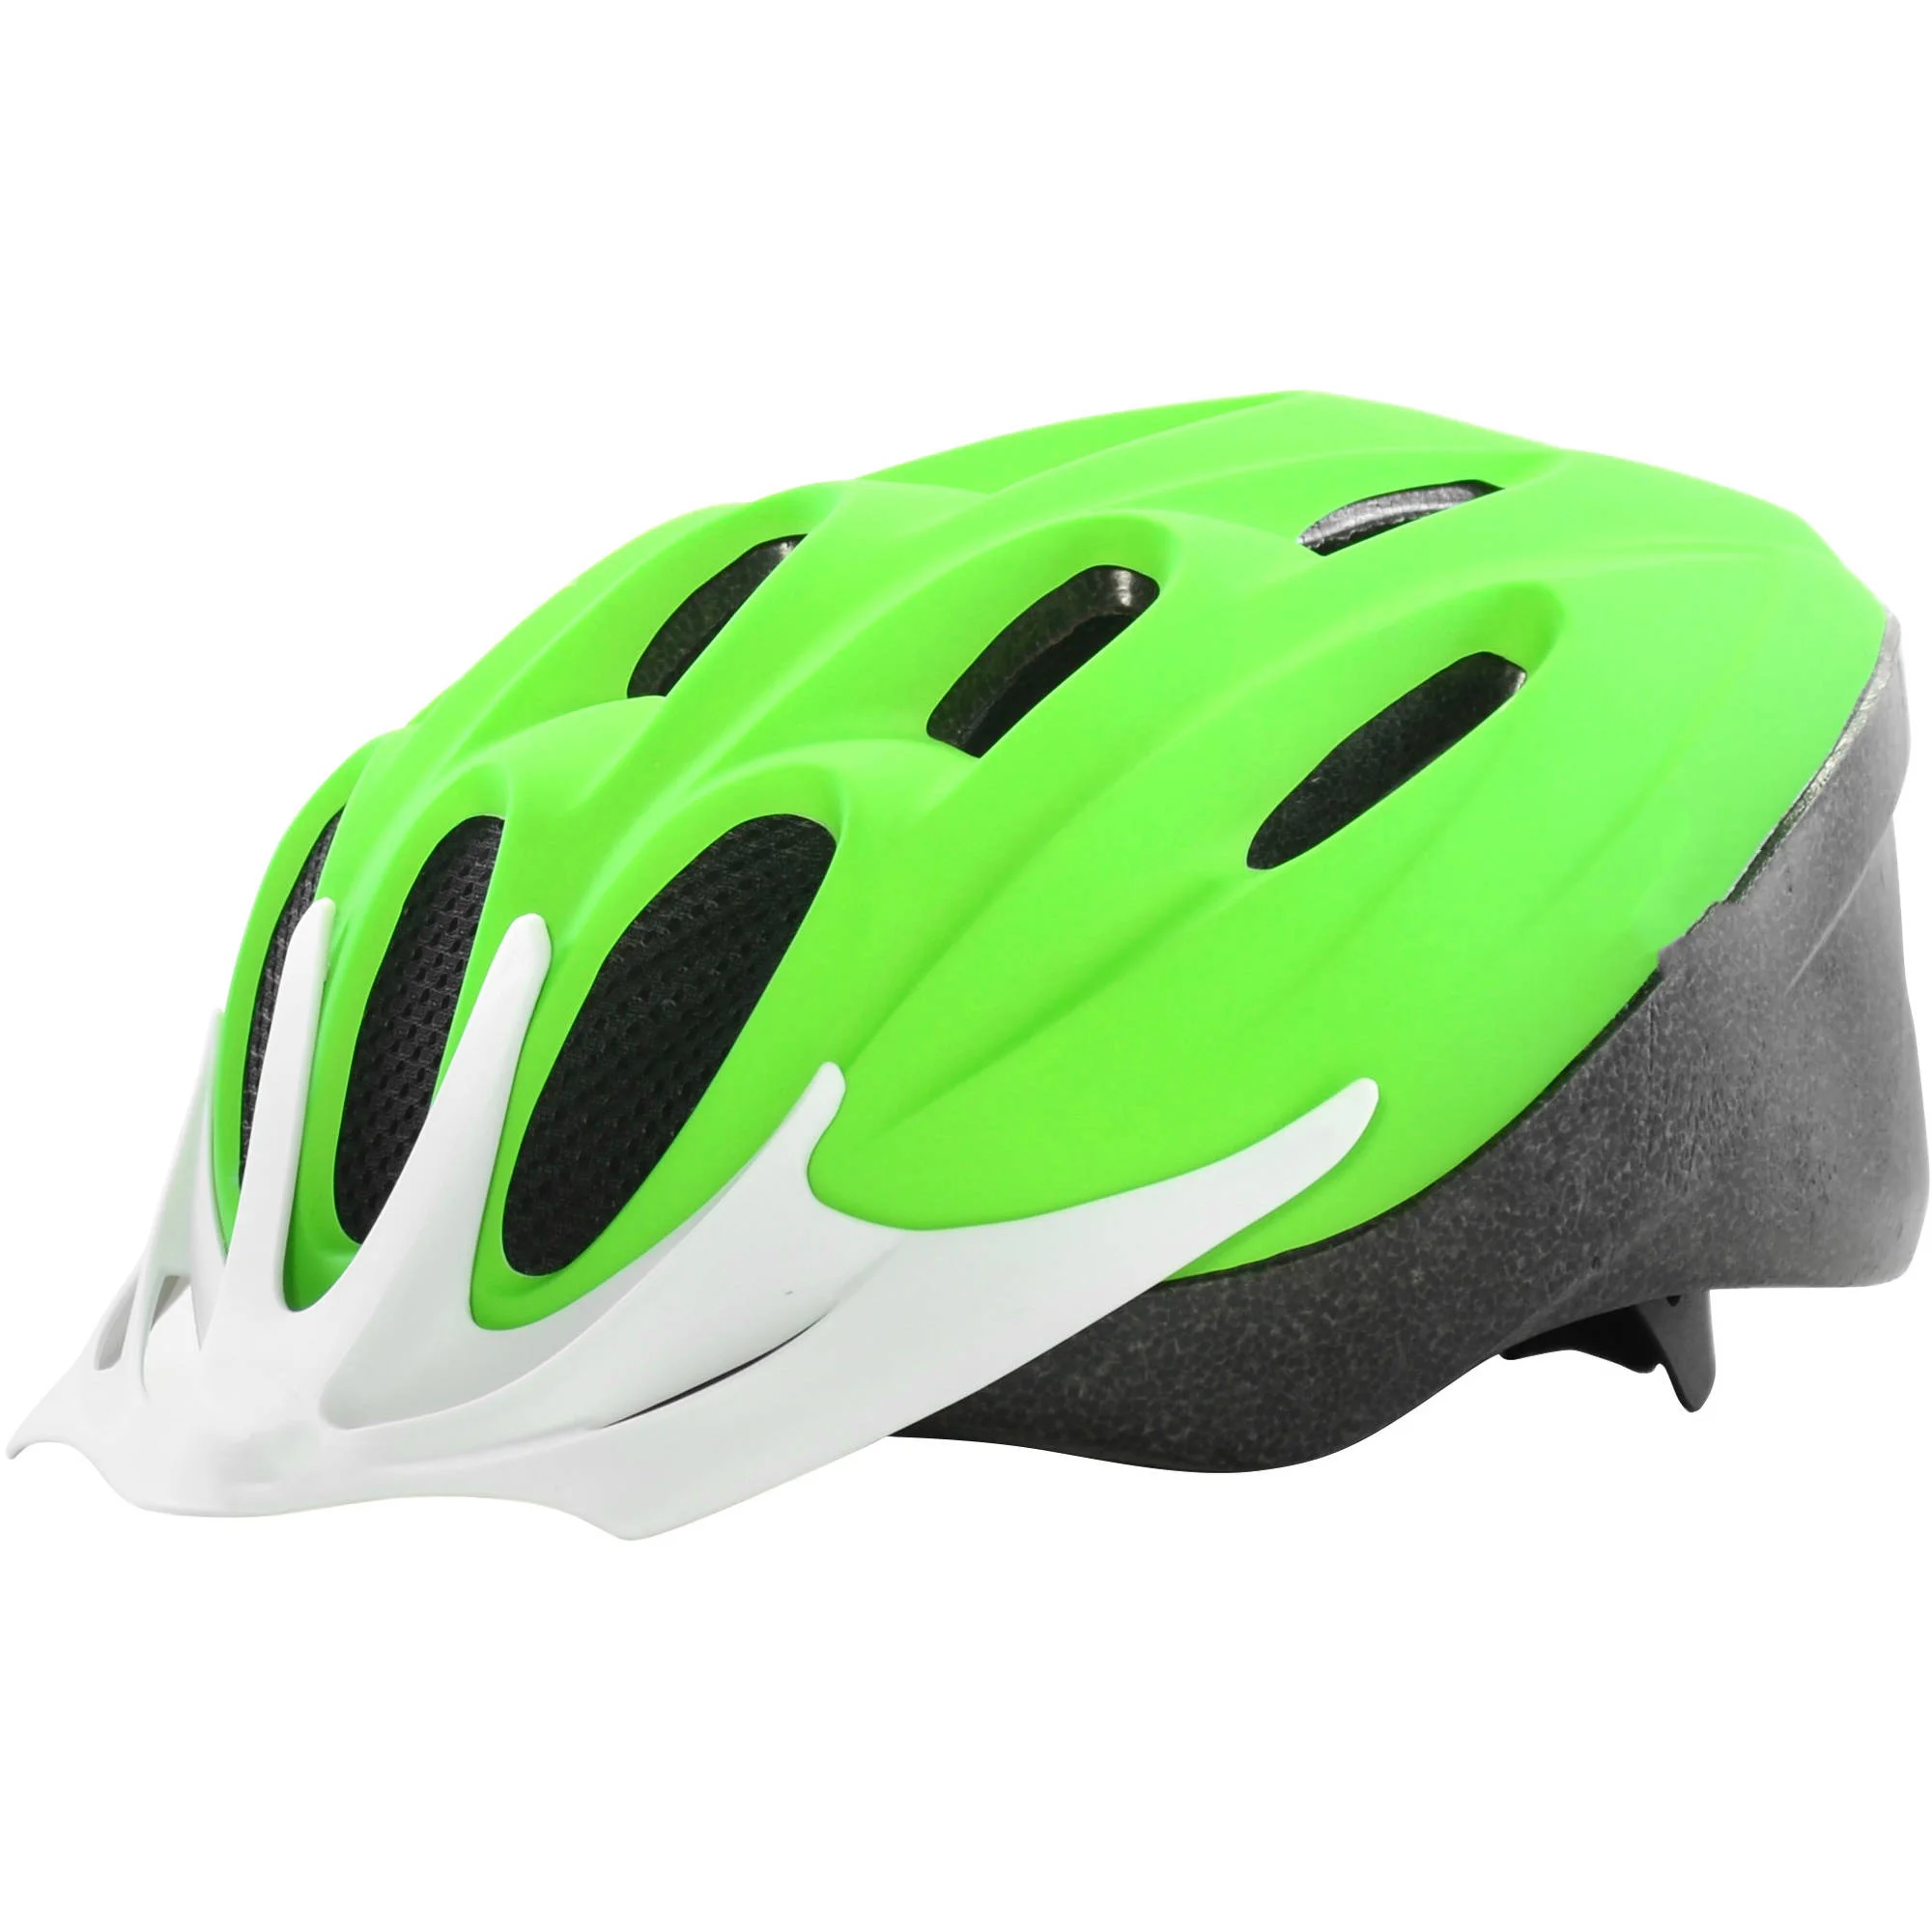 

Матовый зеленый спортивный шлем M (53-57 см)